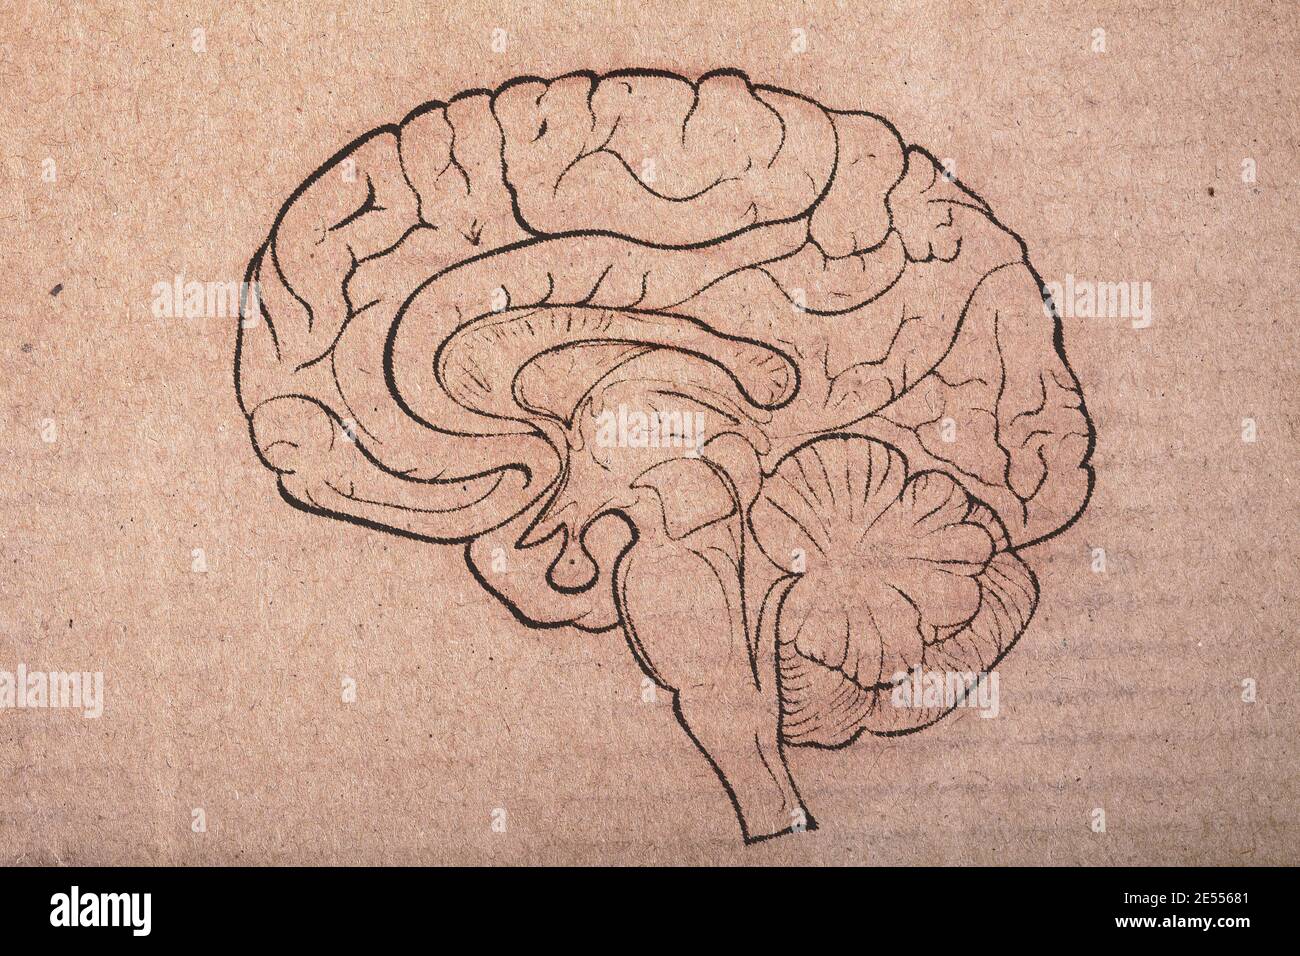 Cerveau humain peint sur la feuille de carton. Banque D'Images